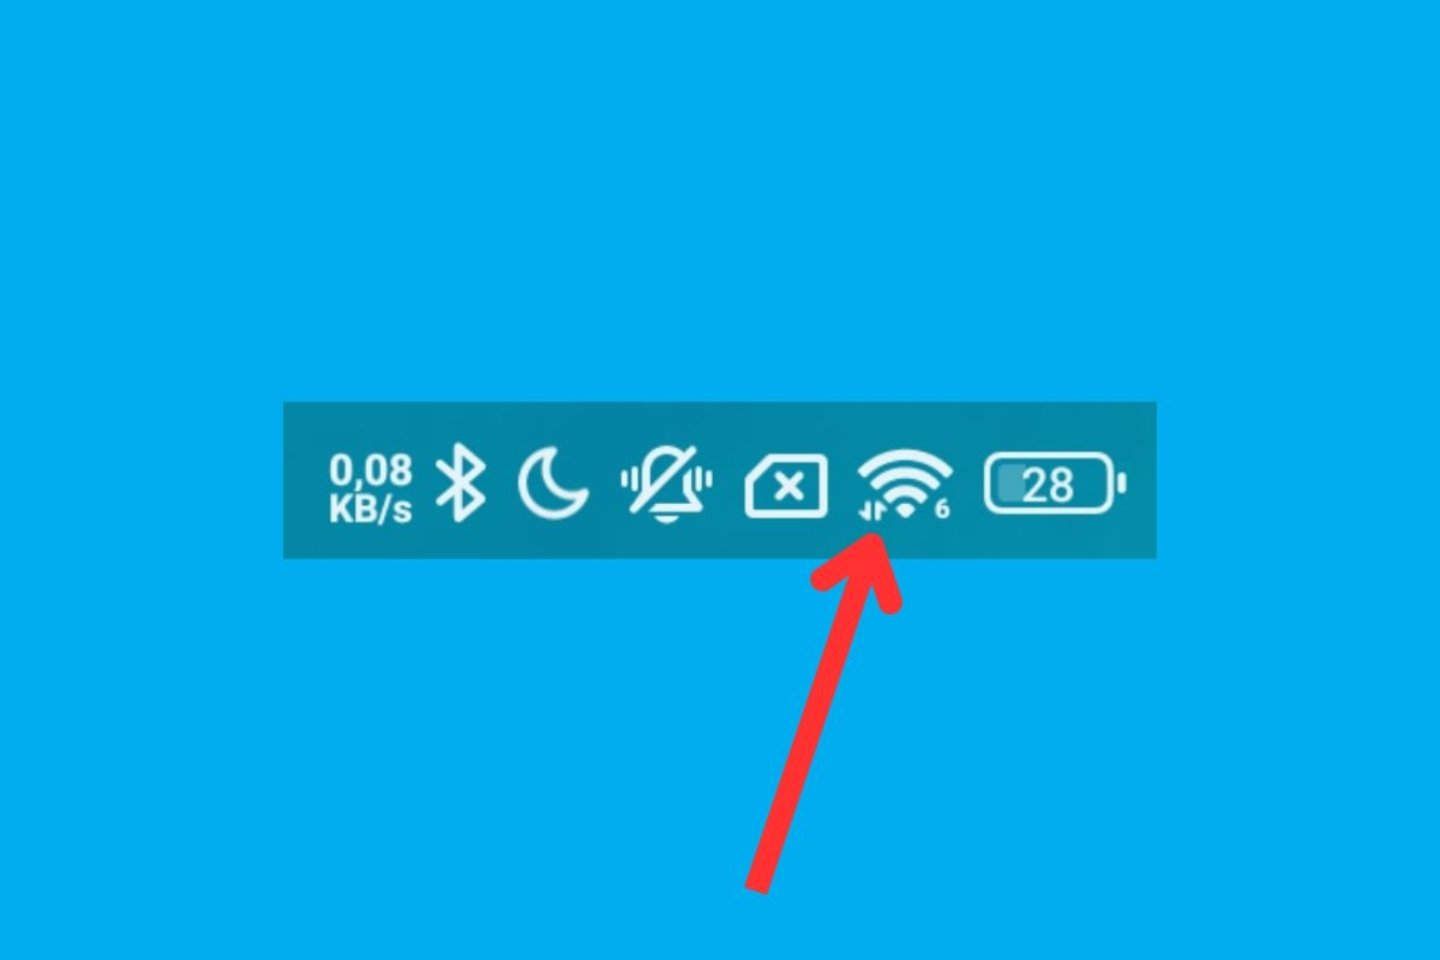 Qué significan las flechas que salen en los iconos superiores del móvil